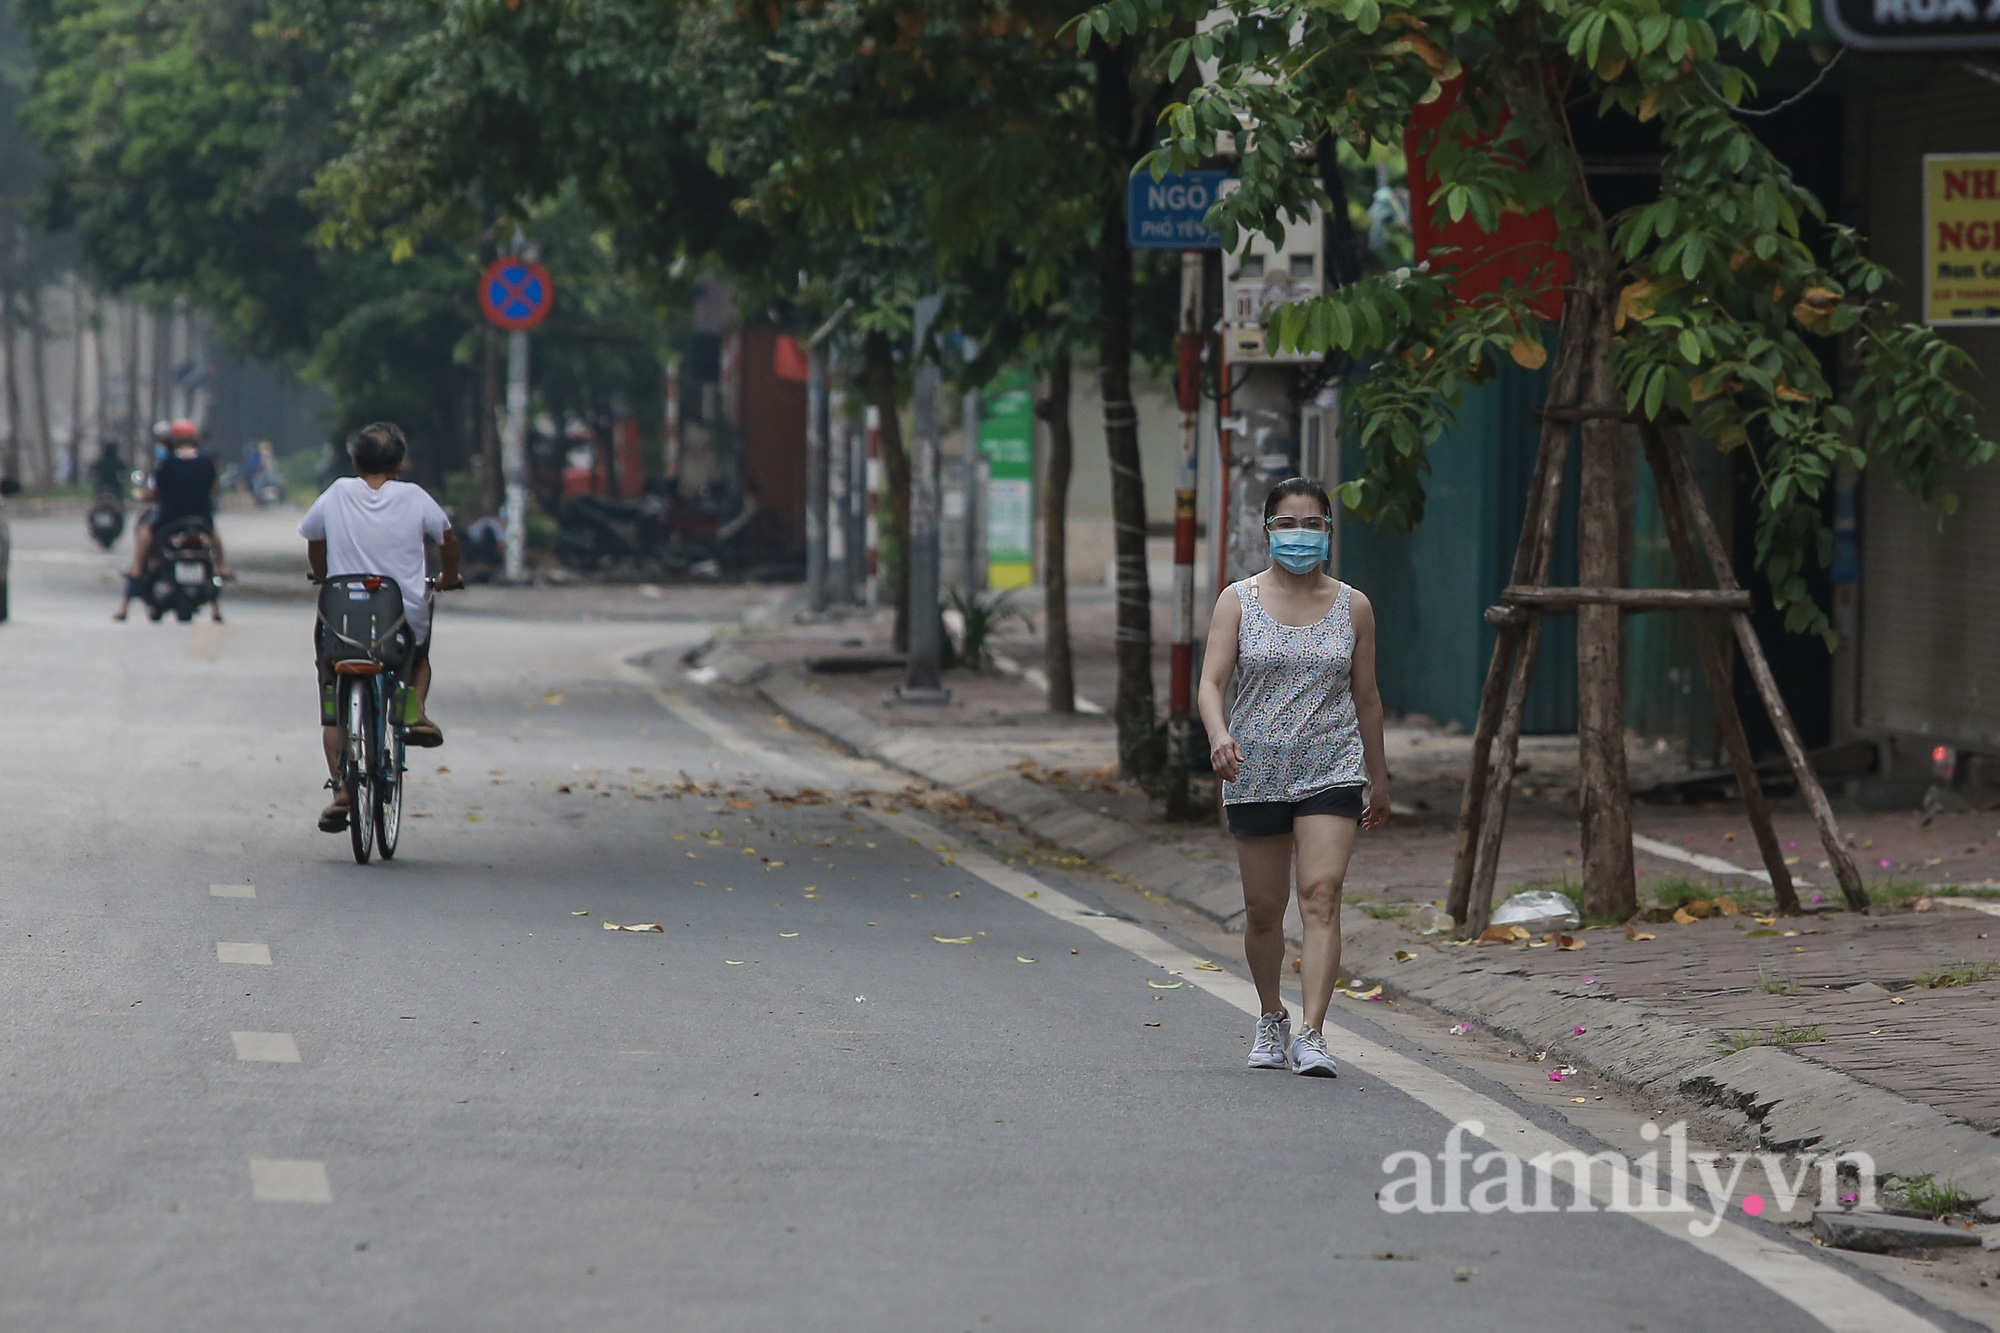 Hà Nội ngày thứ 17 giãn cách xã hội, nhiều người dân vẫn ra đường tập thể dục buổi sáng, có người treo quả bí đỏ trước xe để đạp xe đạp - Ảnh 1.